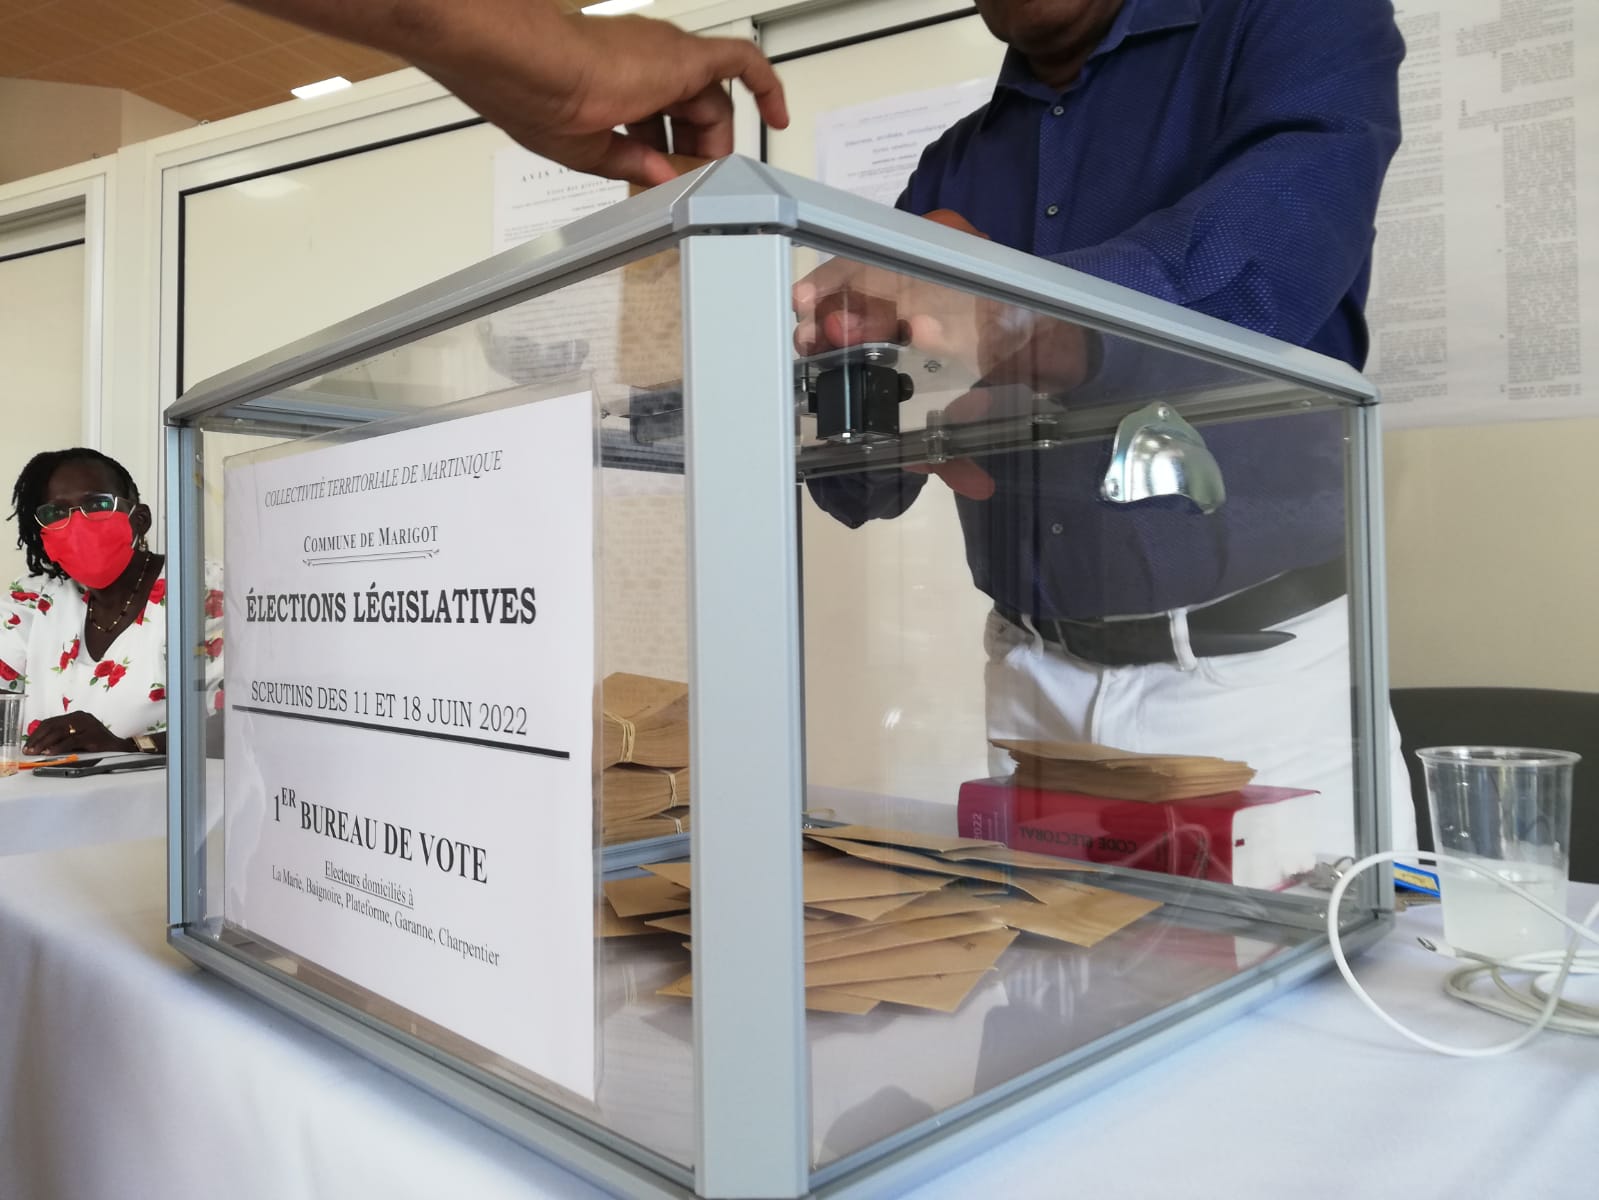     [PHOTOS] Législatives 2022 : léger sursaut dans les bureaux de vote de Martinique 

